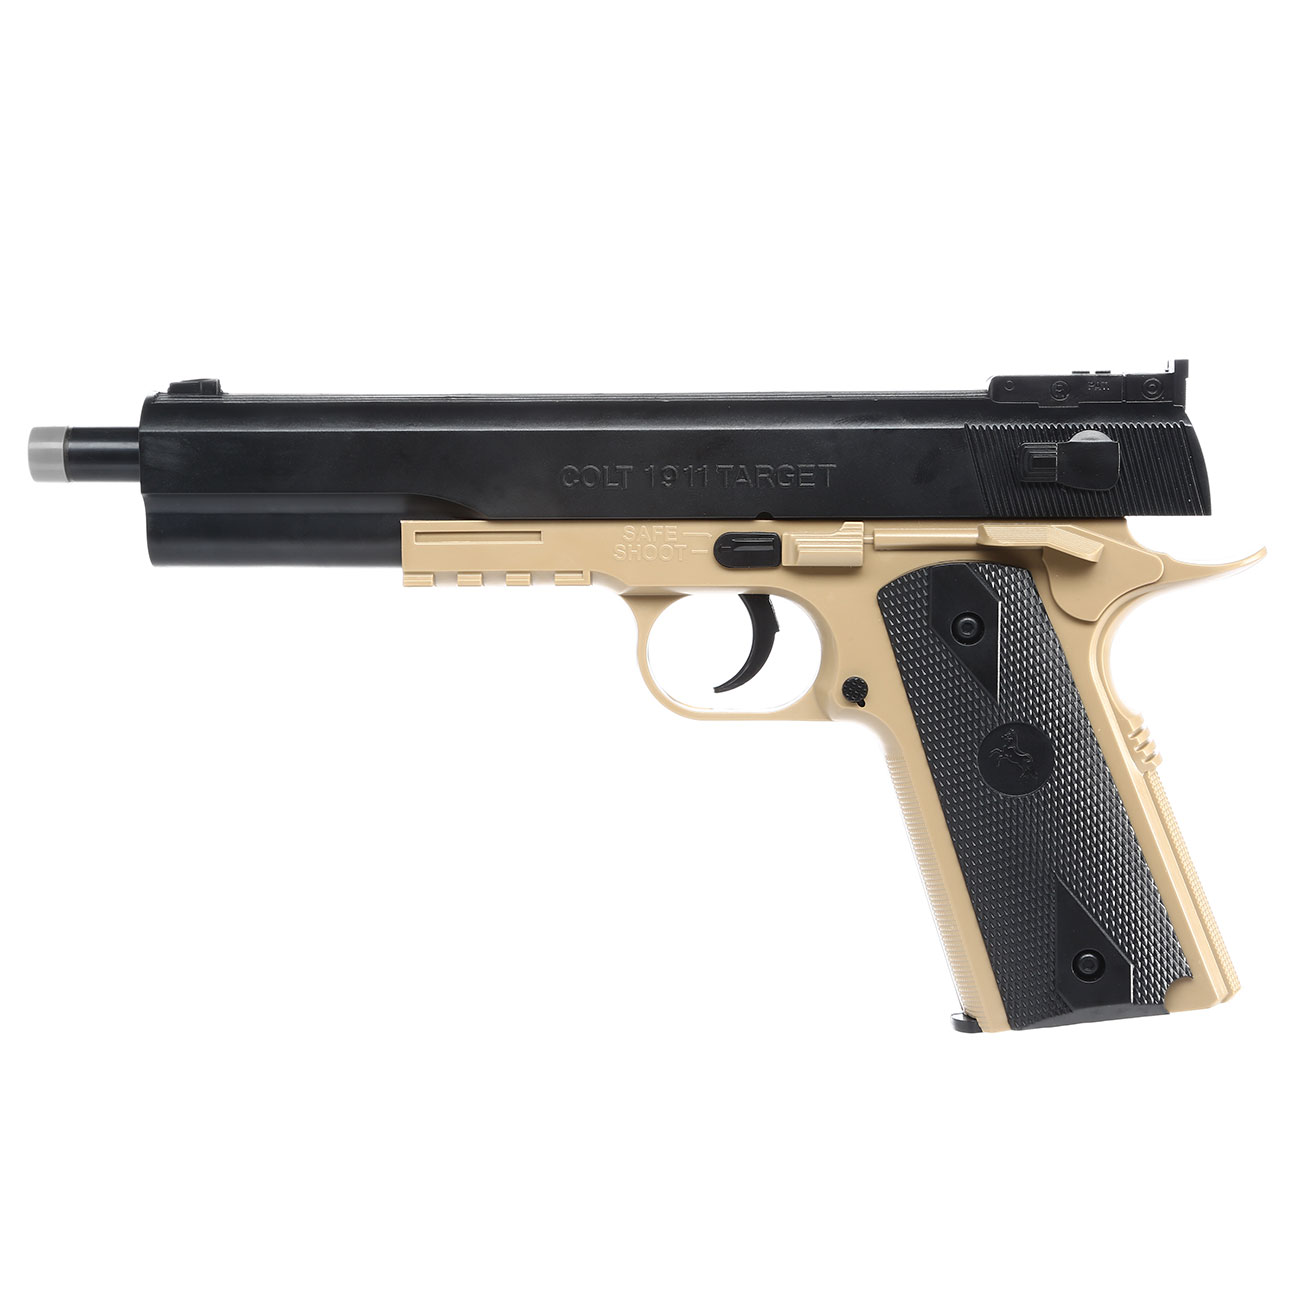 Cybergun Colt 1911 Target Kit inkl. Holster Springer 6mm BB Desert Tan Bild 2